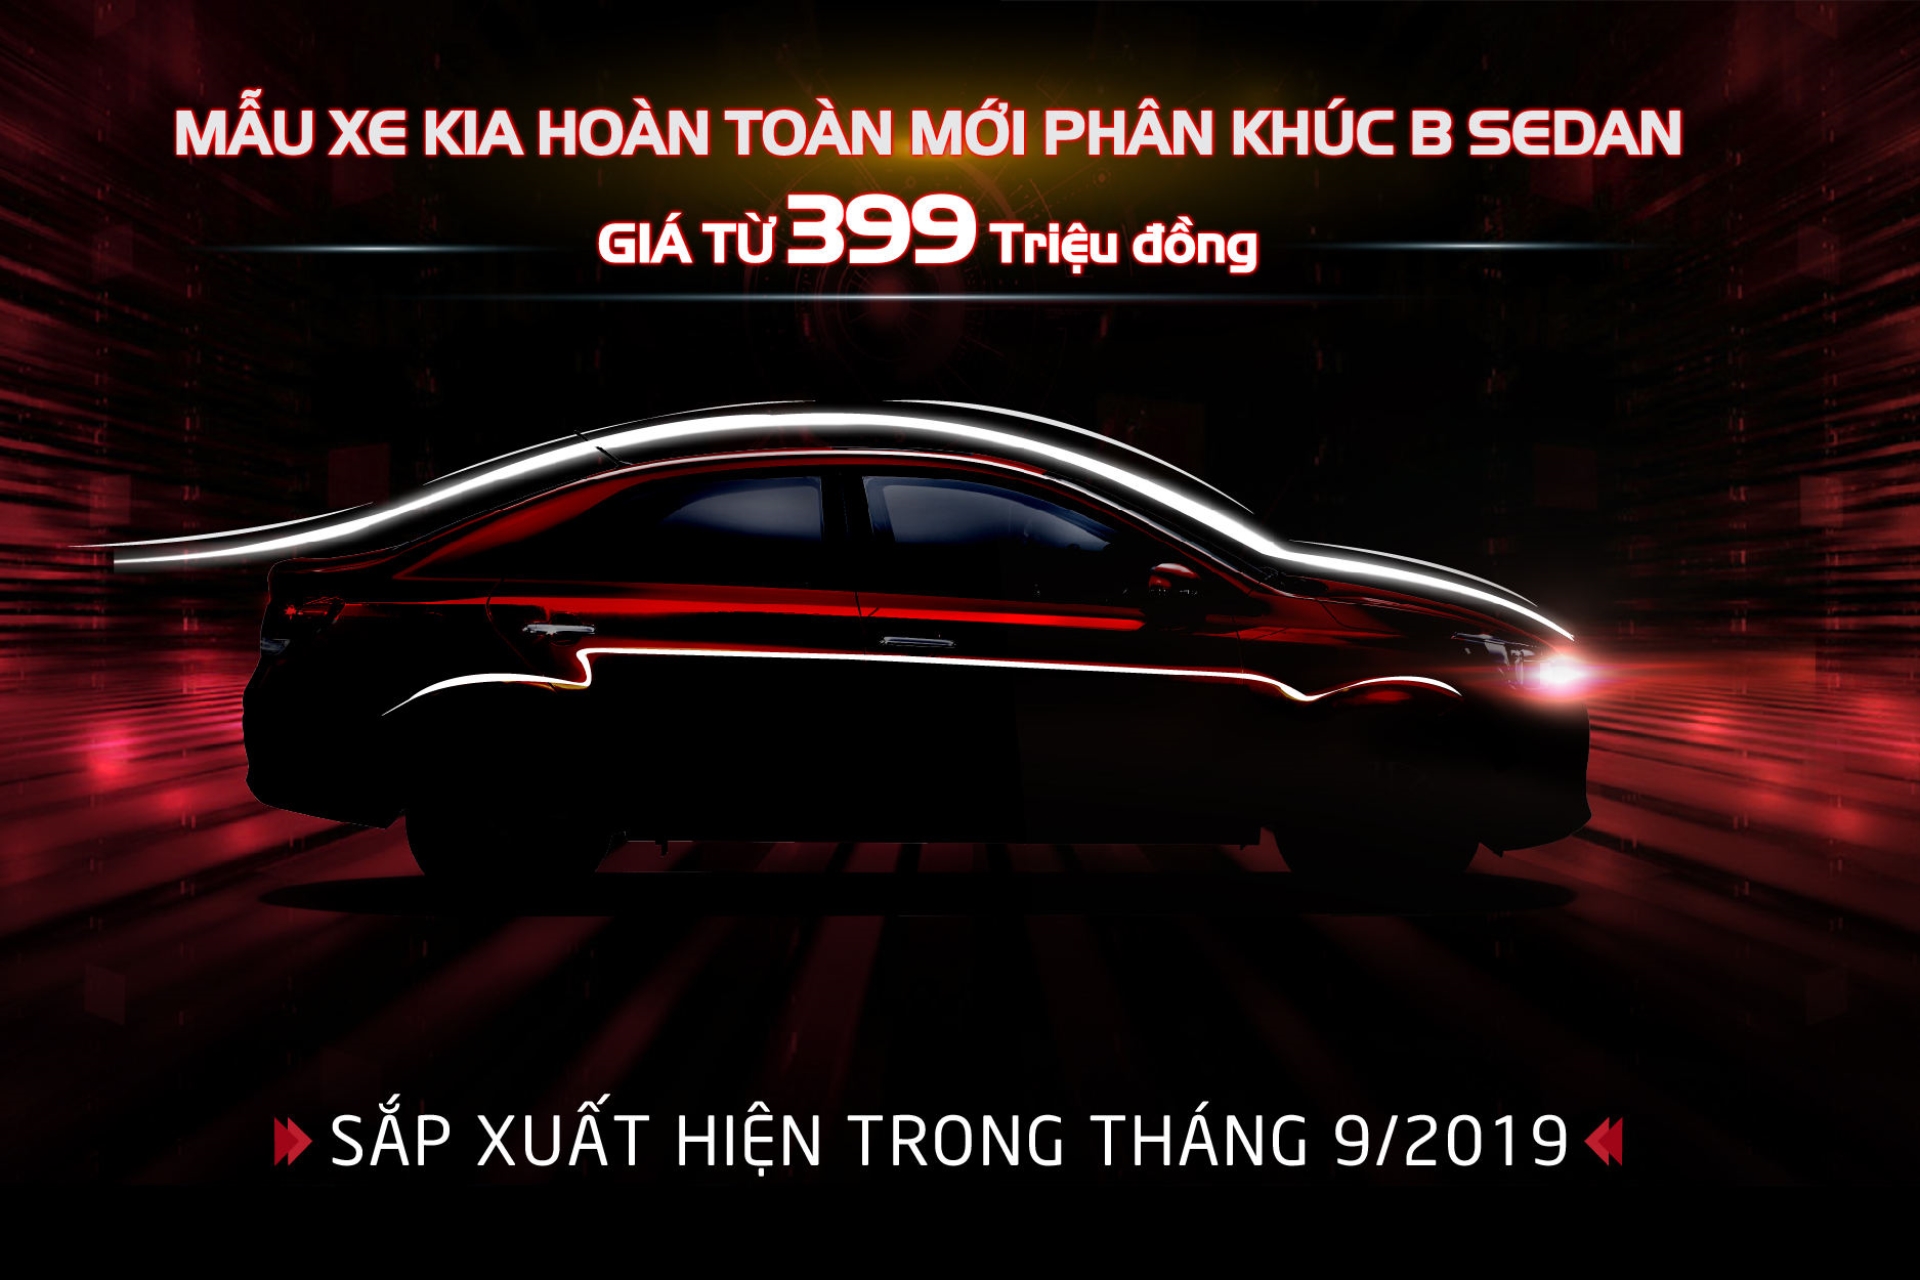 Kia Việt Nam chính thức cho đặt hàng mẫu xe KIA Soluto 2019 với giá từ 399 triệu đồng